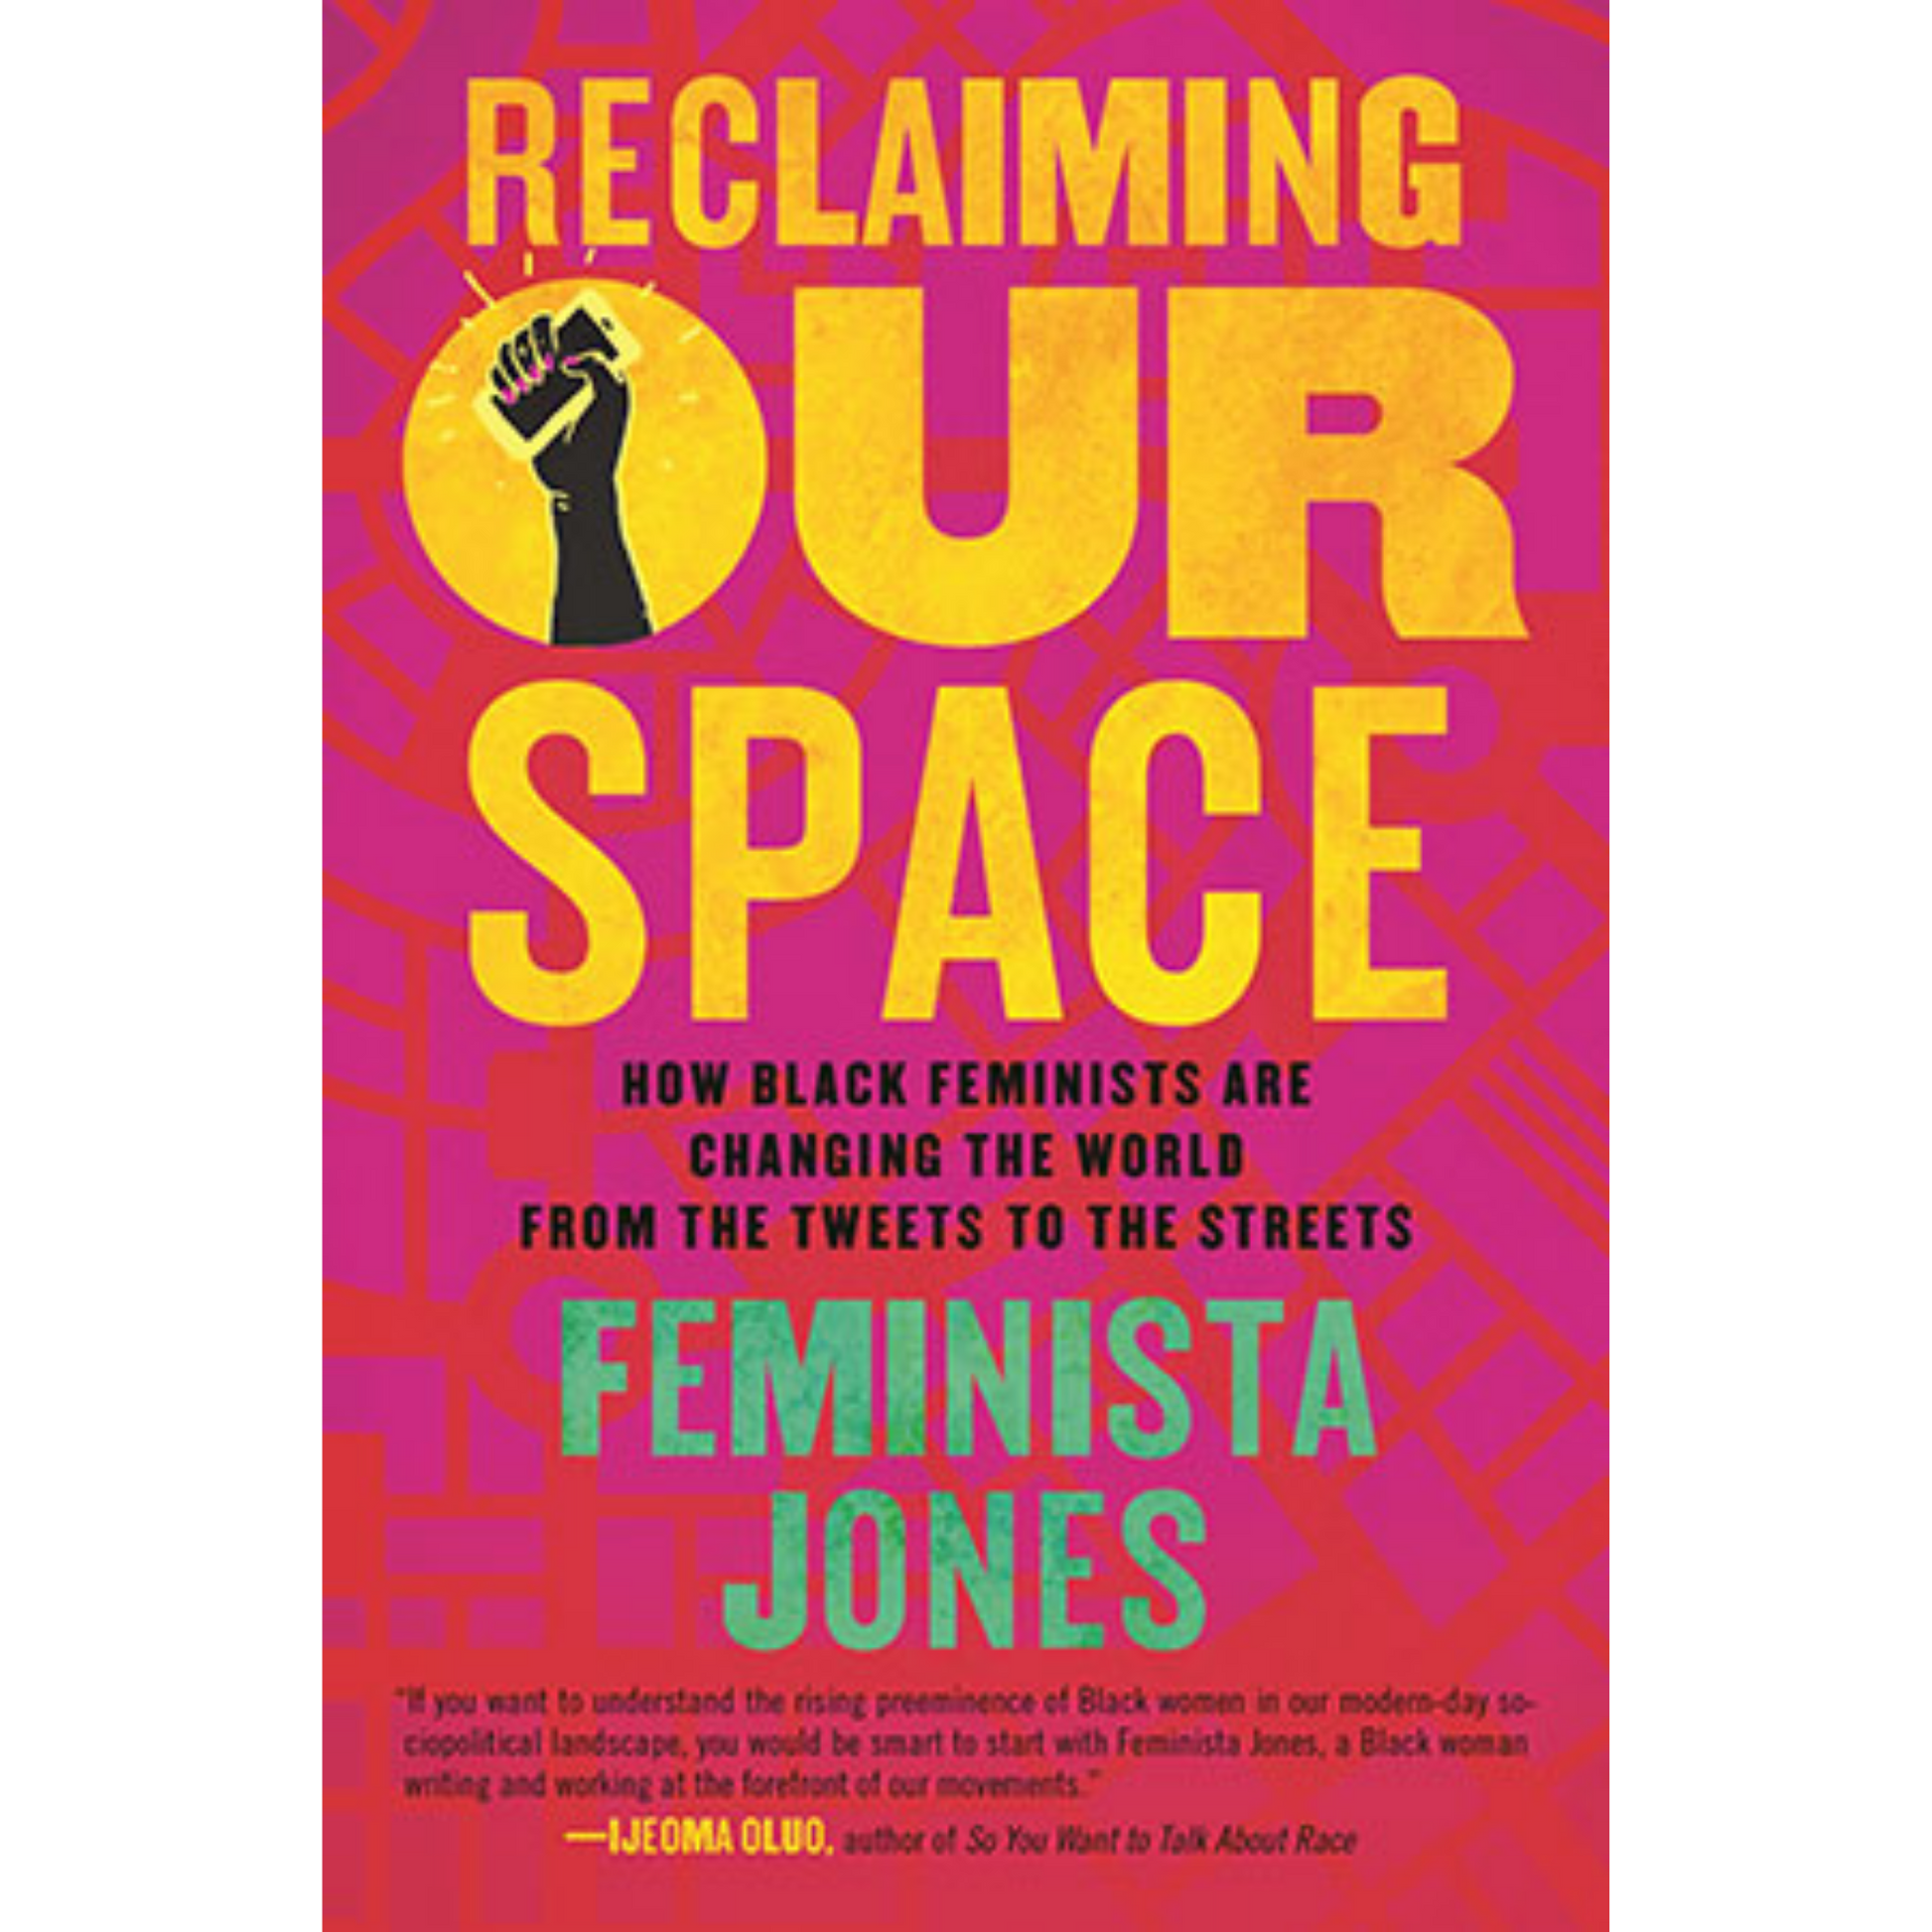 reclaiming our space feminista jones